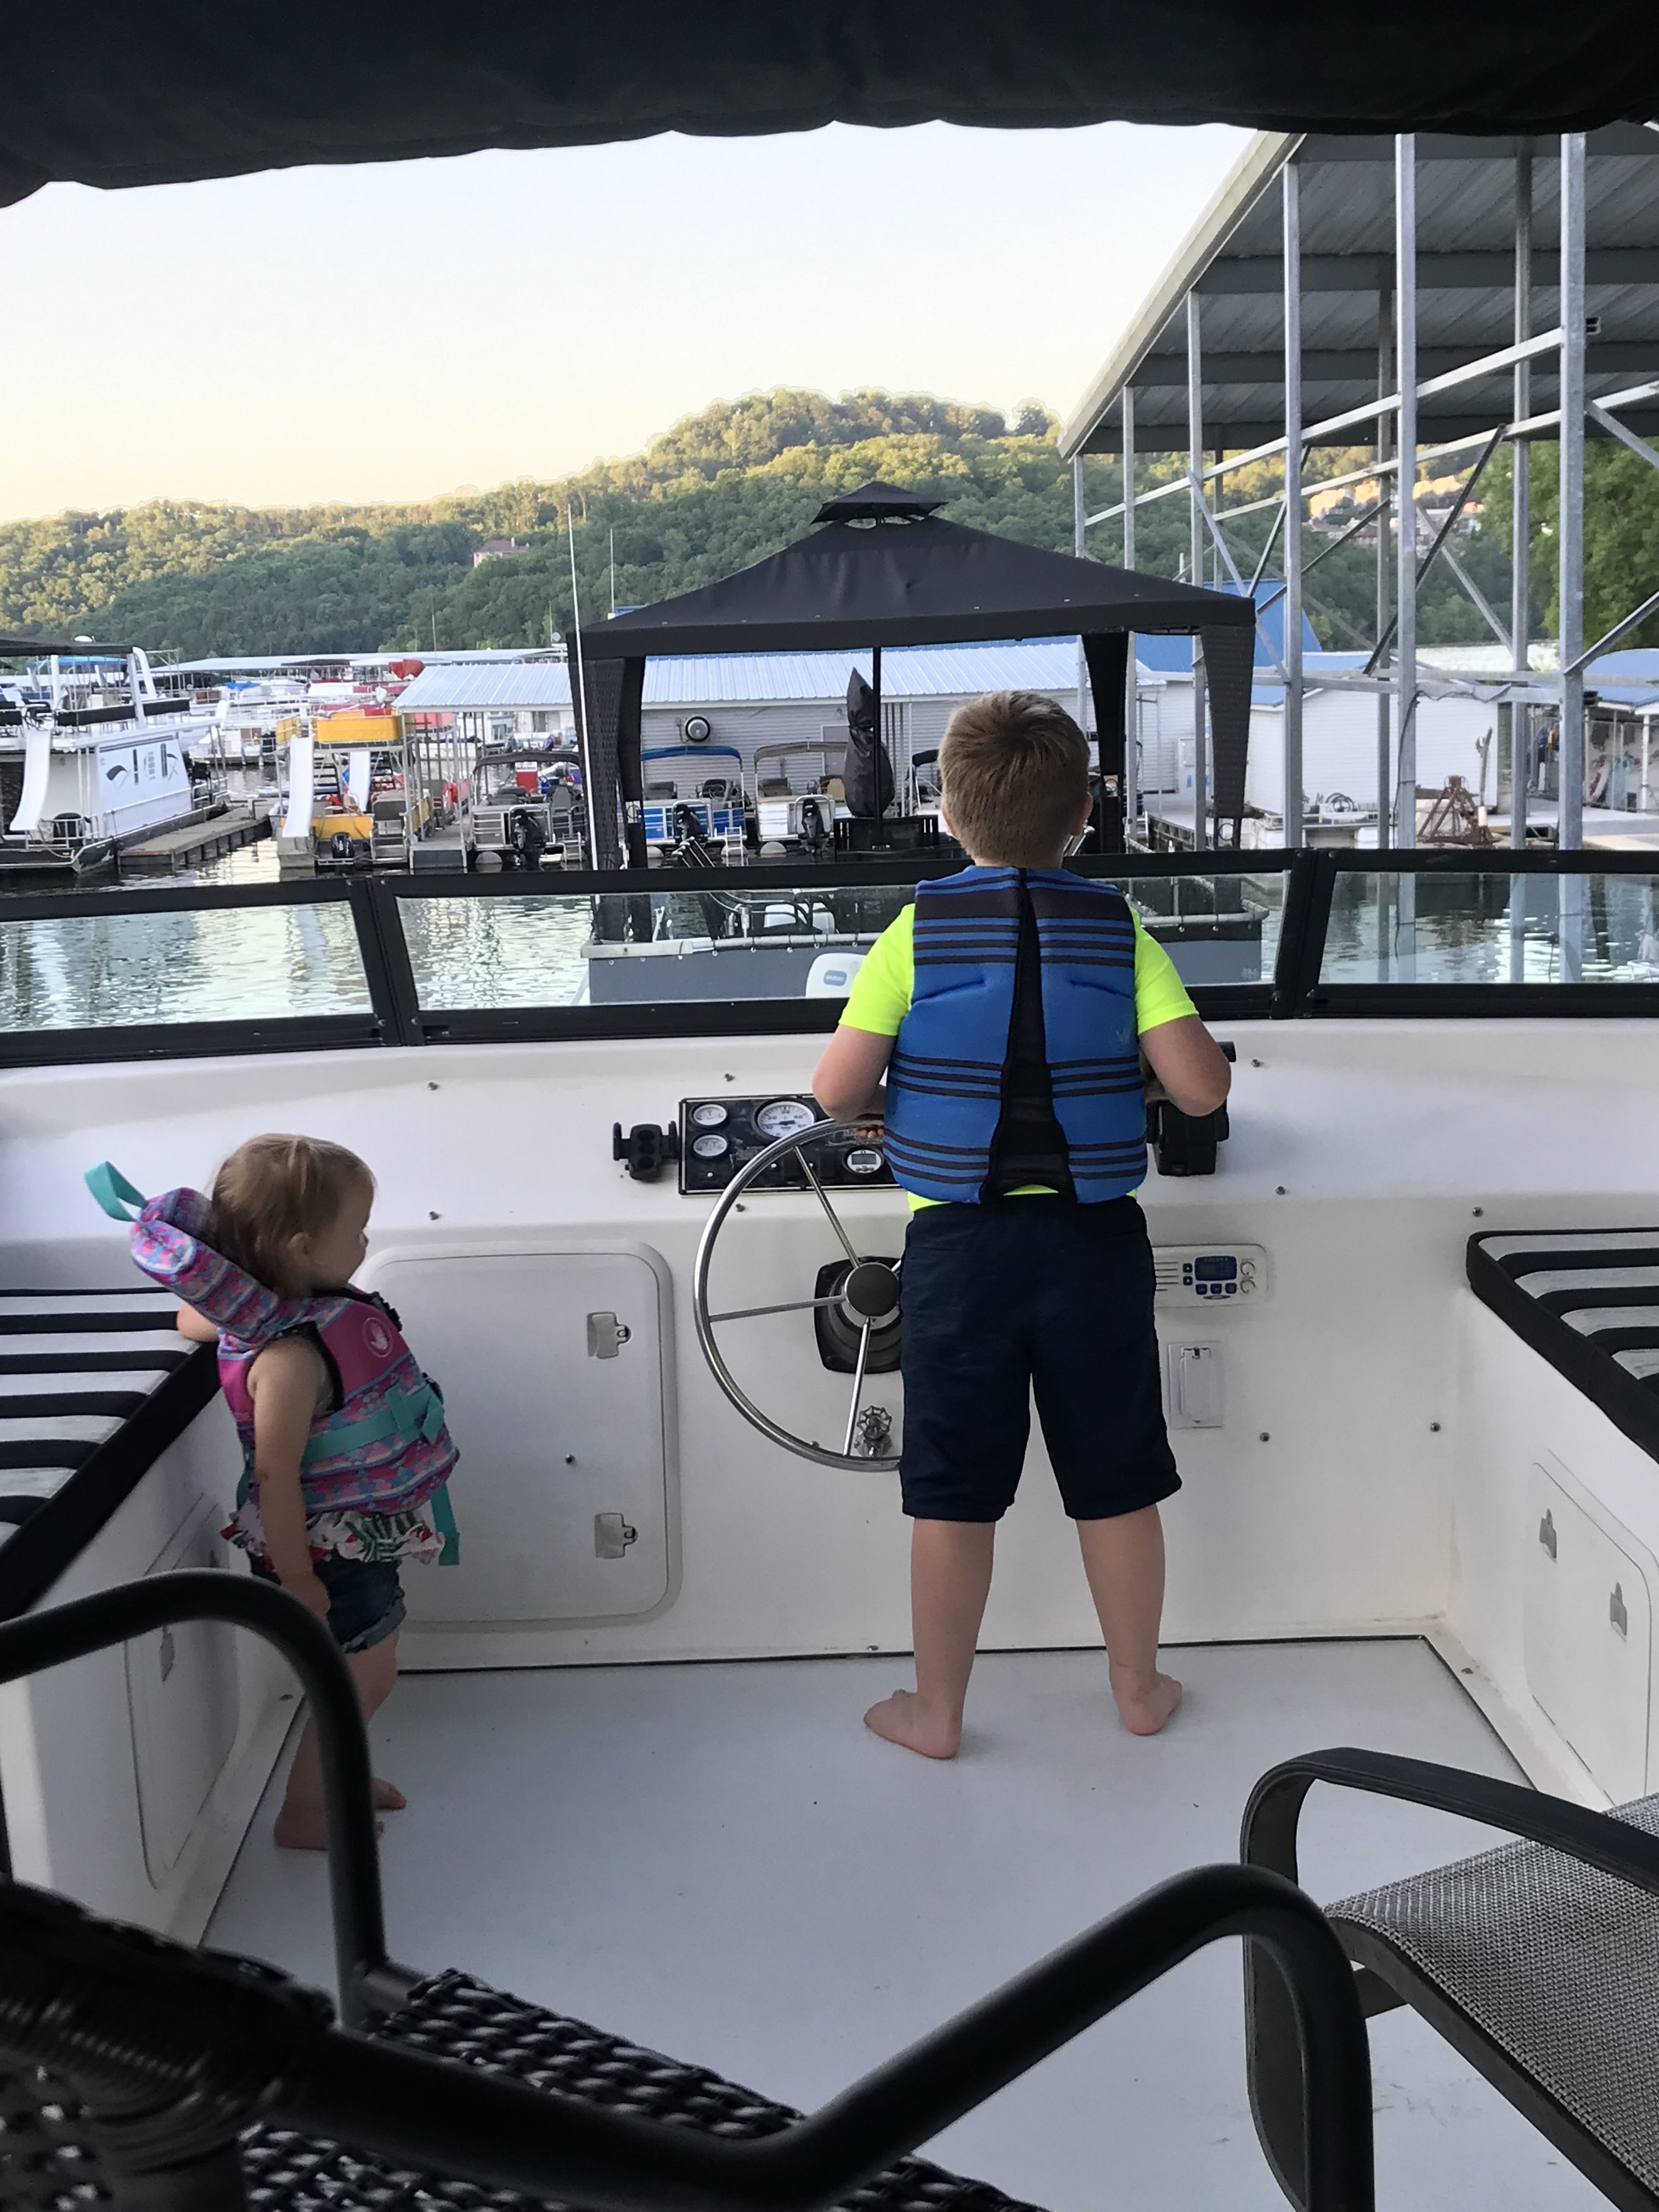 Kids on a Boat Rental